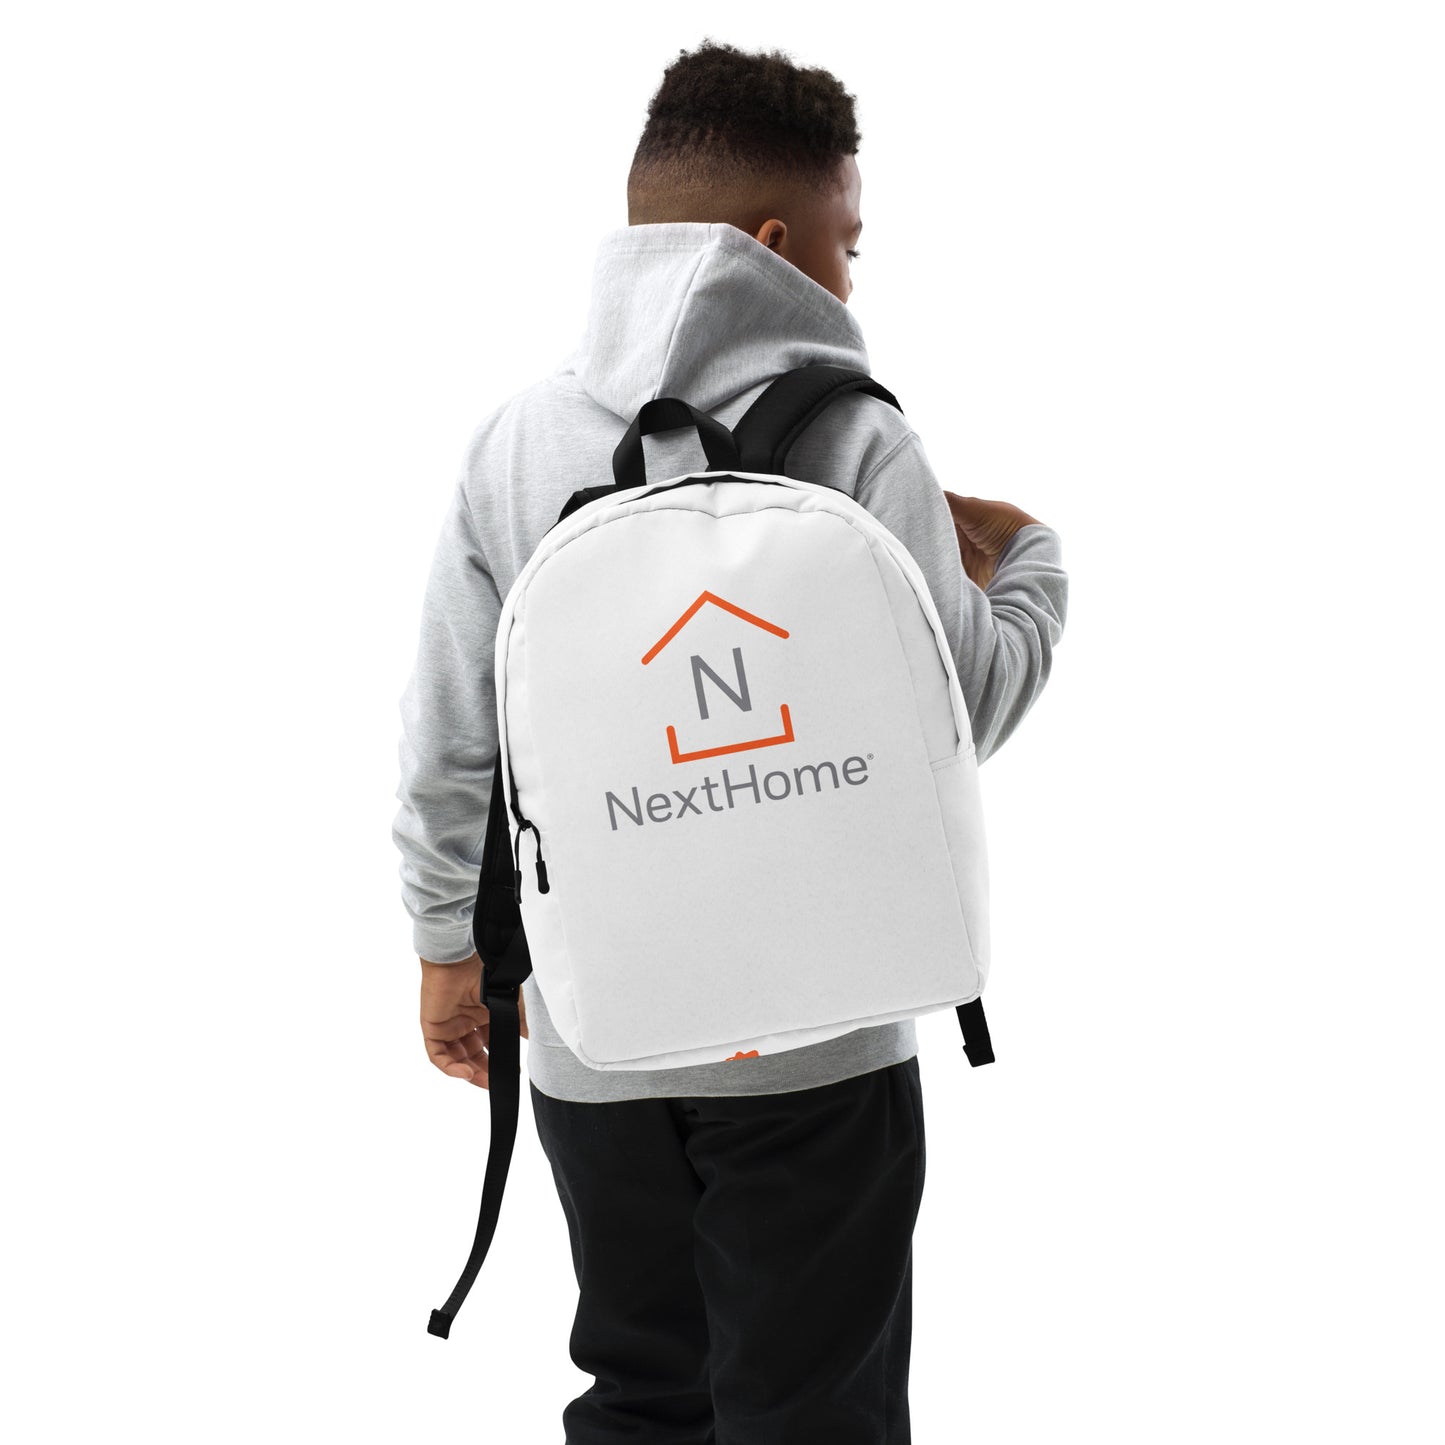 NextHome Minimalist Backpack